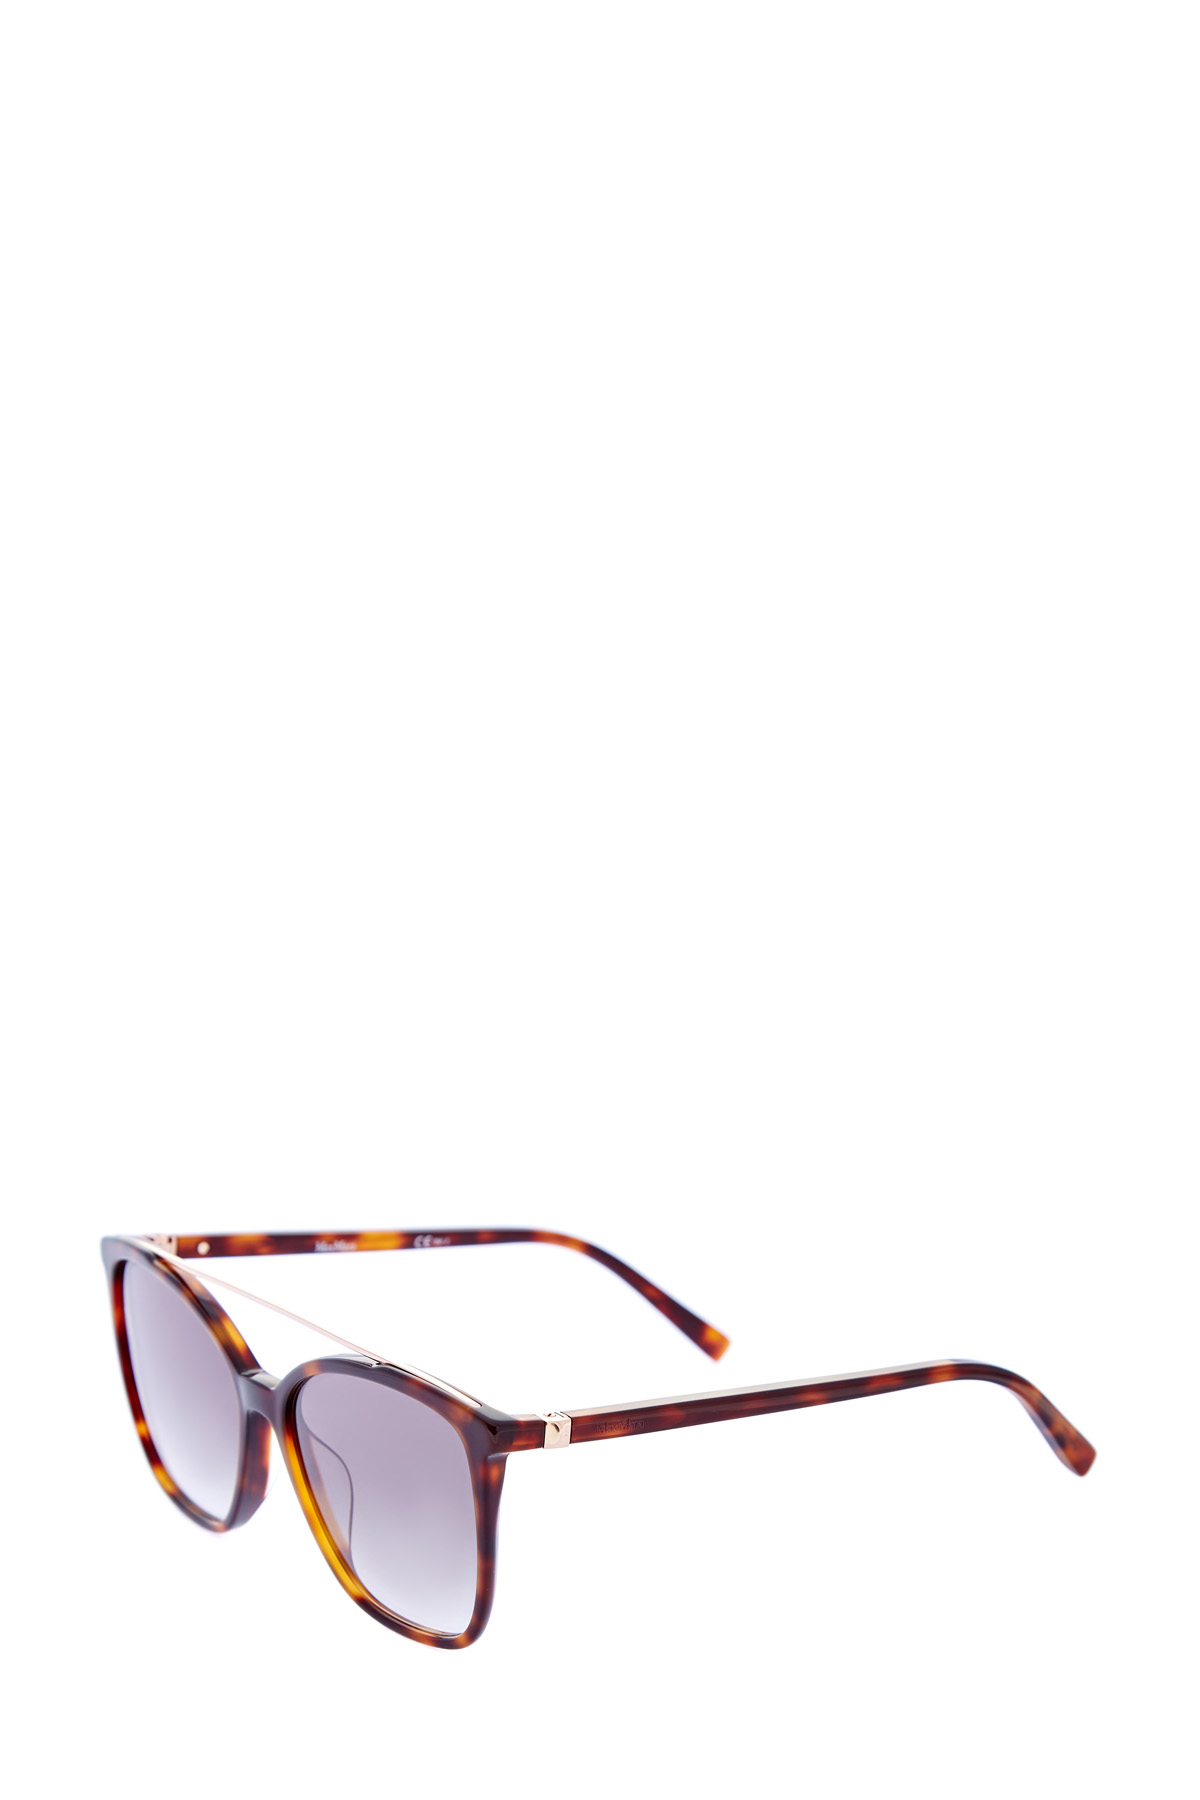 Очки-oversize в прозрачной оправе с внутренним черепаховым принтом MAX MARA (sunglasses), размер 40 - фото 3